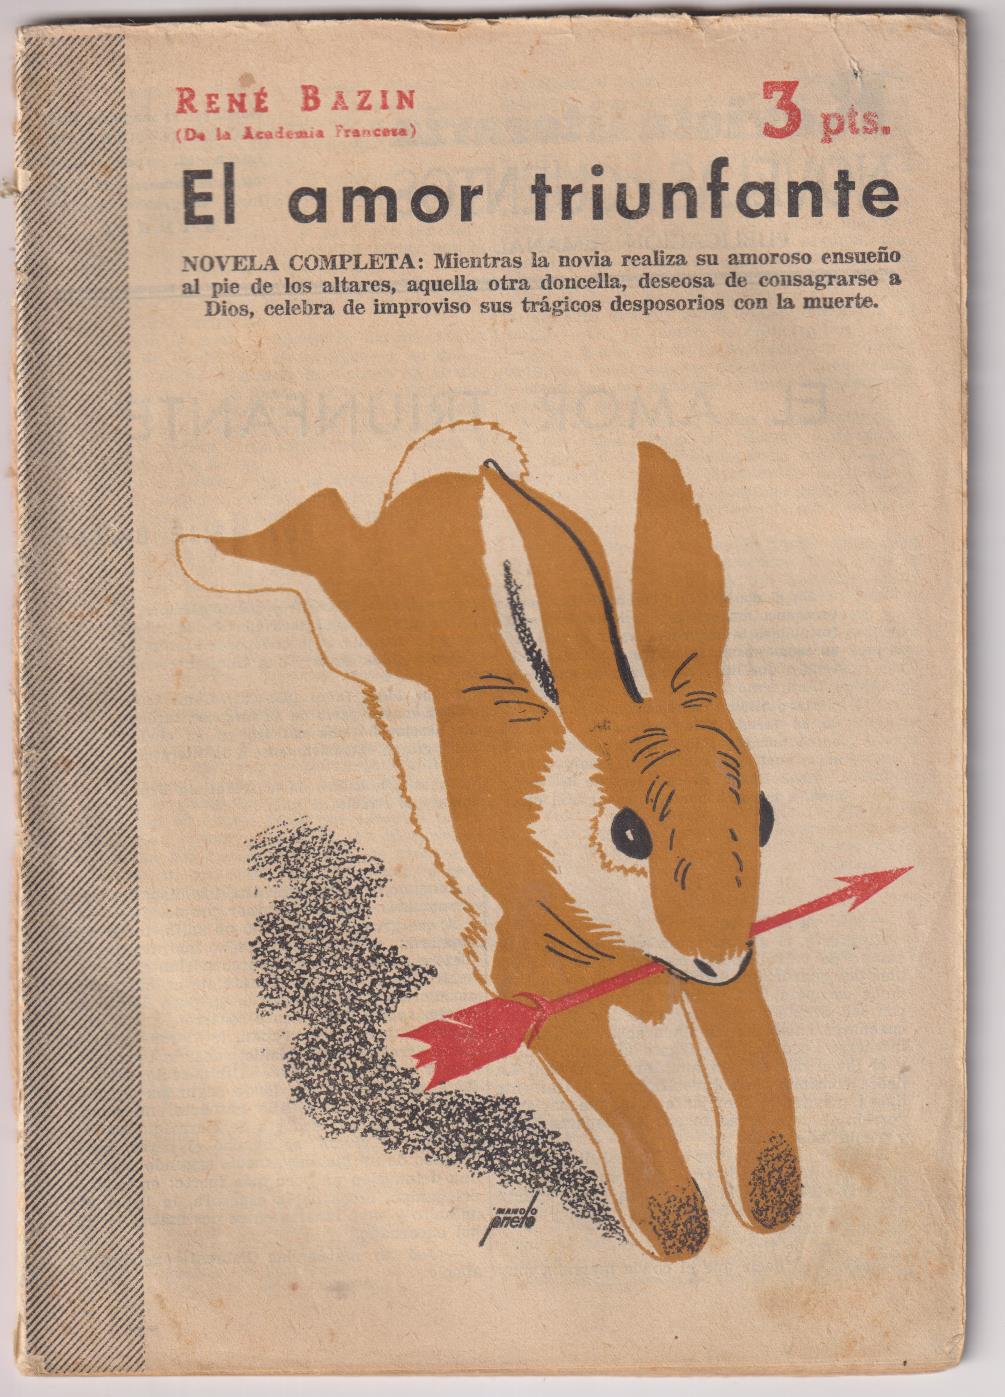 Revista Literaria Novelas y Cuentos nº 1254. René Bazin. El amor triunfante, Año 1955